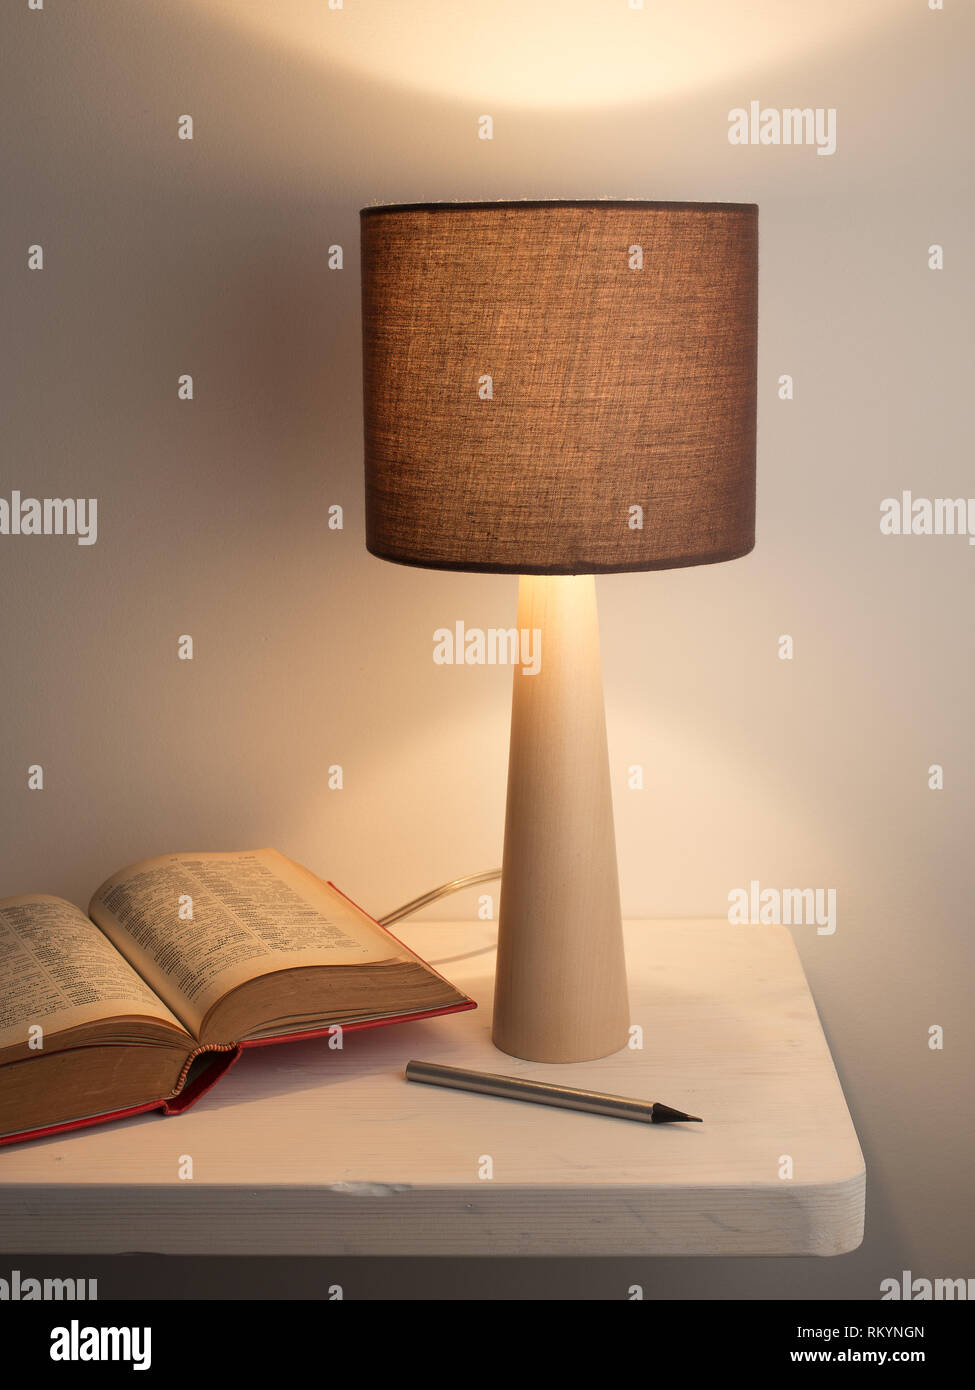 Nacht Lampe und buchen Sie auf den weißen Schreibtisch oder Nachttisch.  Lernen oder Studieren Konzept Stockfotografie - Alamy